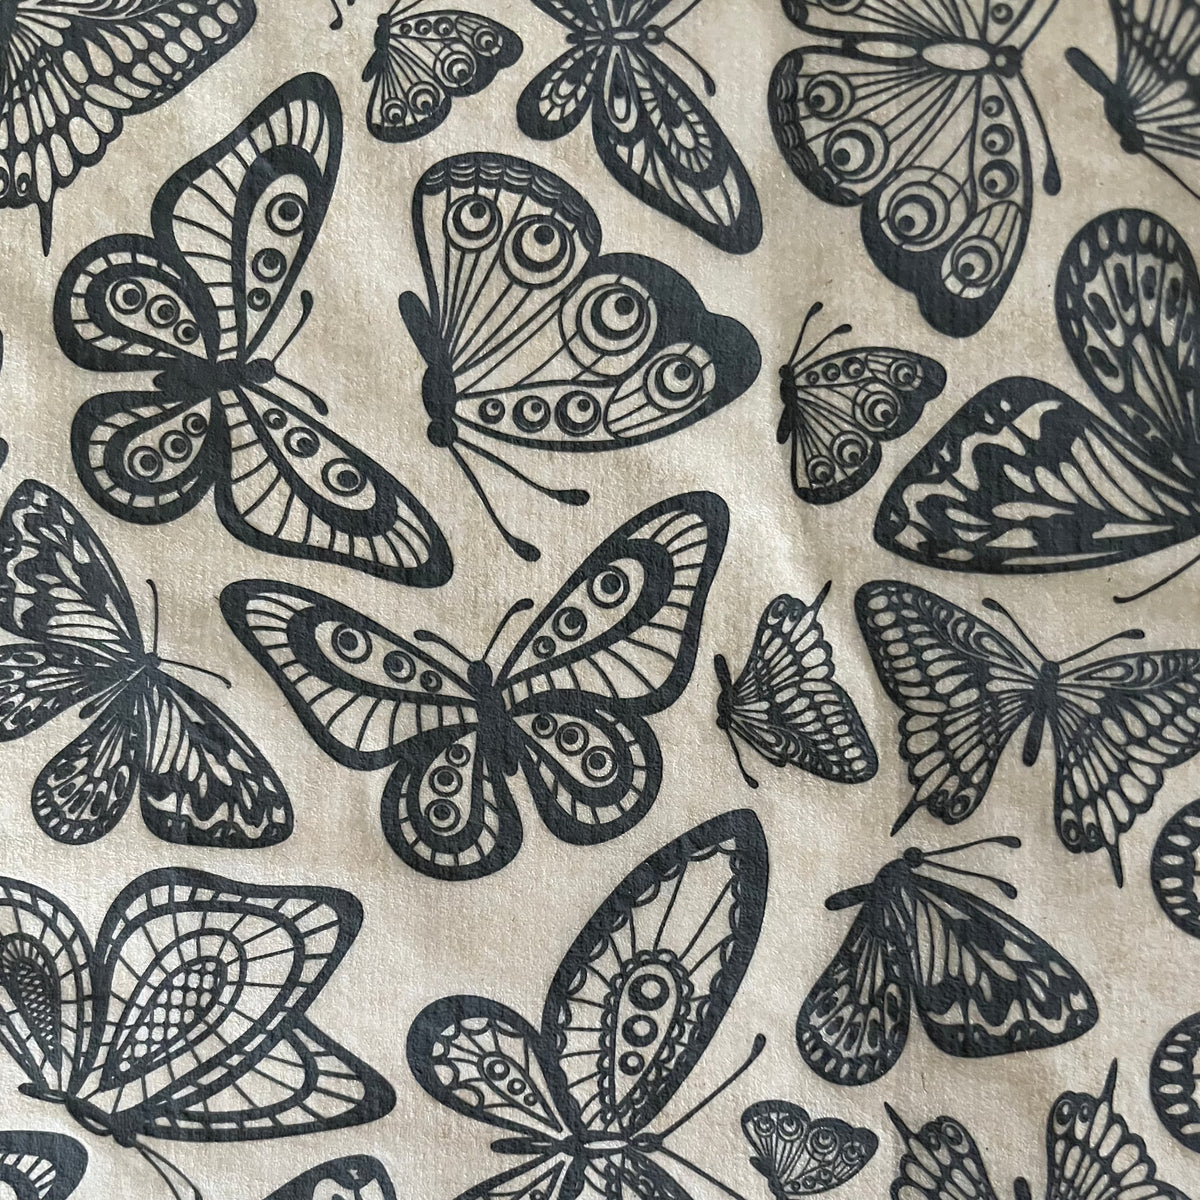 Butterflies in Flight - Underglaze Transfer Sheet - You Choose Color